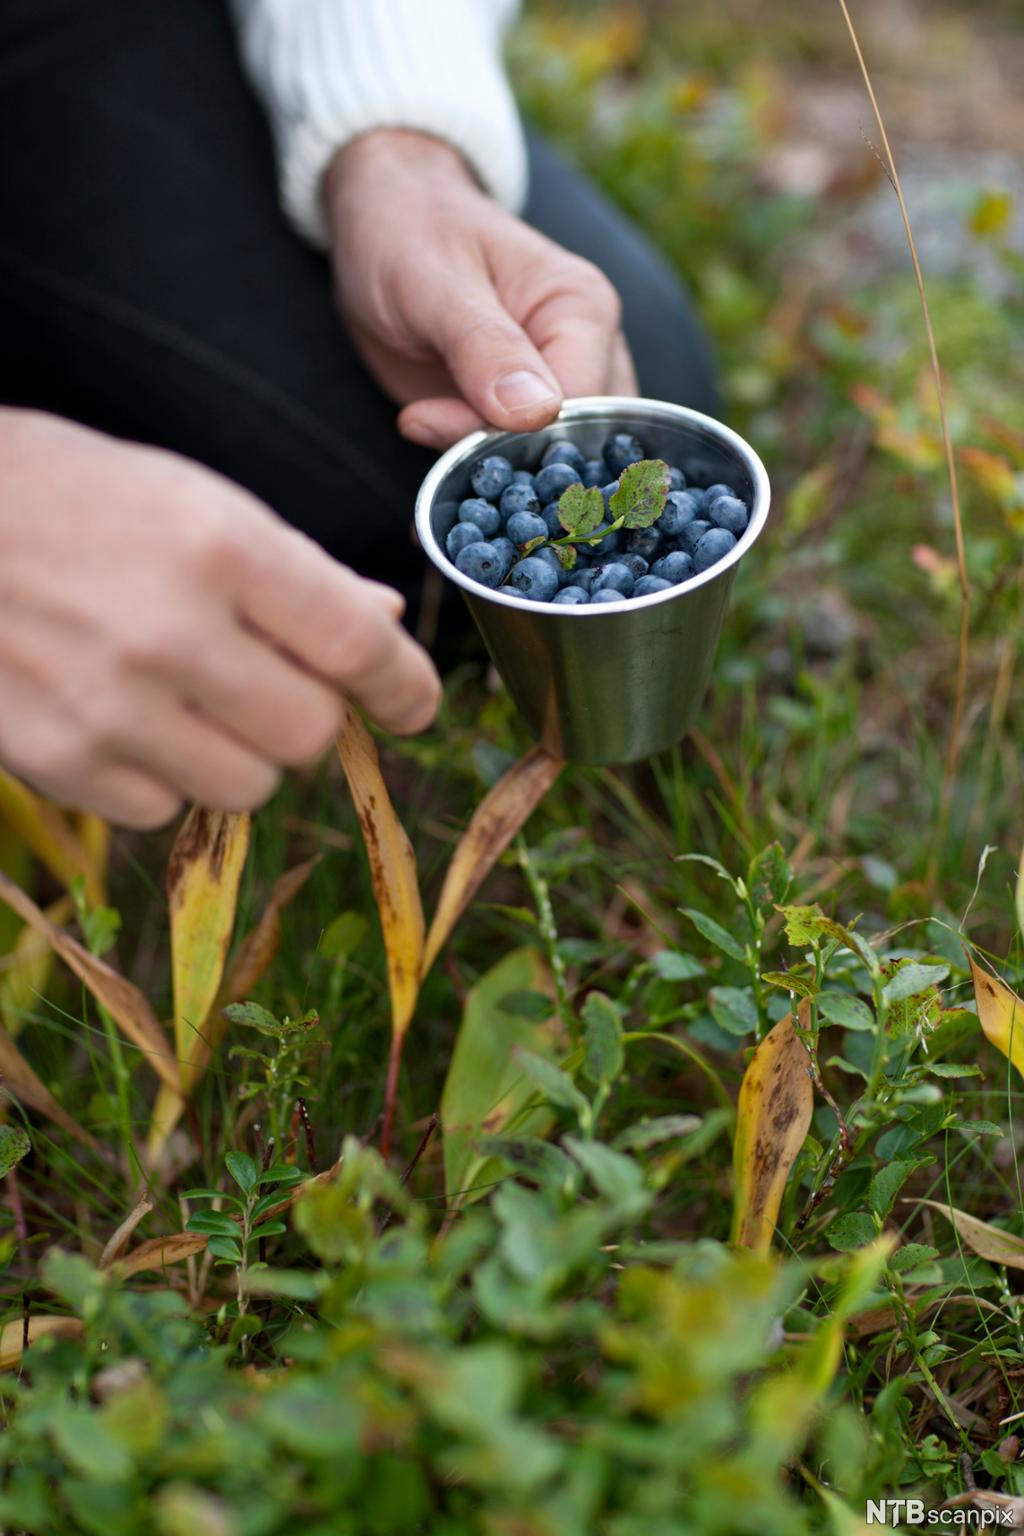 Hender som holder kopp med blåbær i grønne omgivelser. Foto.